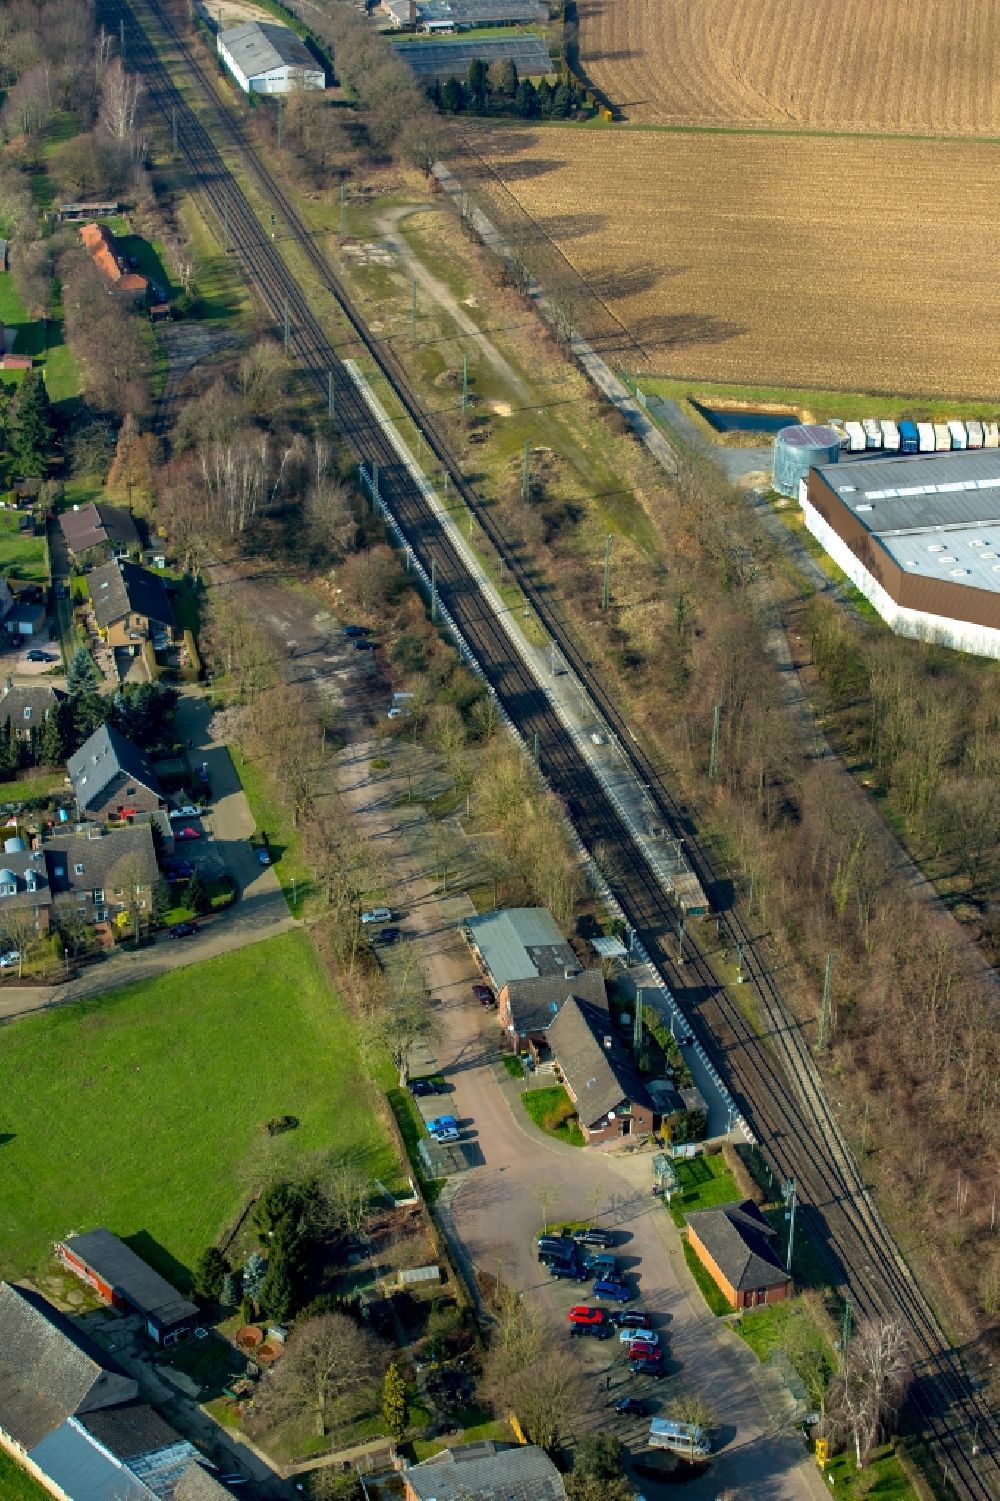 Luftbild Rees - Gleisverlauf und Bahnhofsgebäude der Deutschen Bahn Empel-Rees in Rees im Bundesland Nordrhein-Westfalen